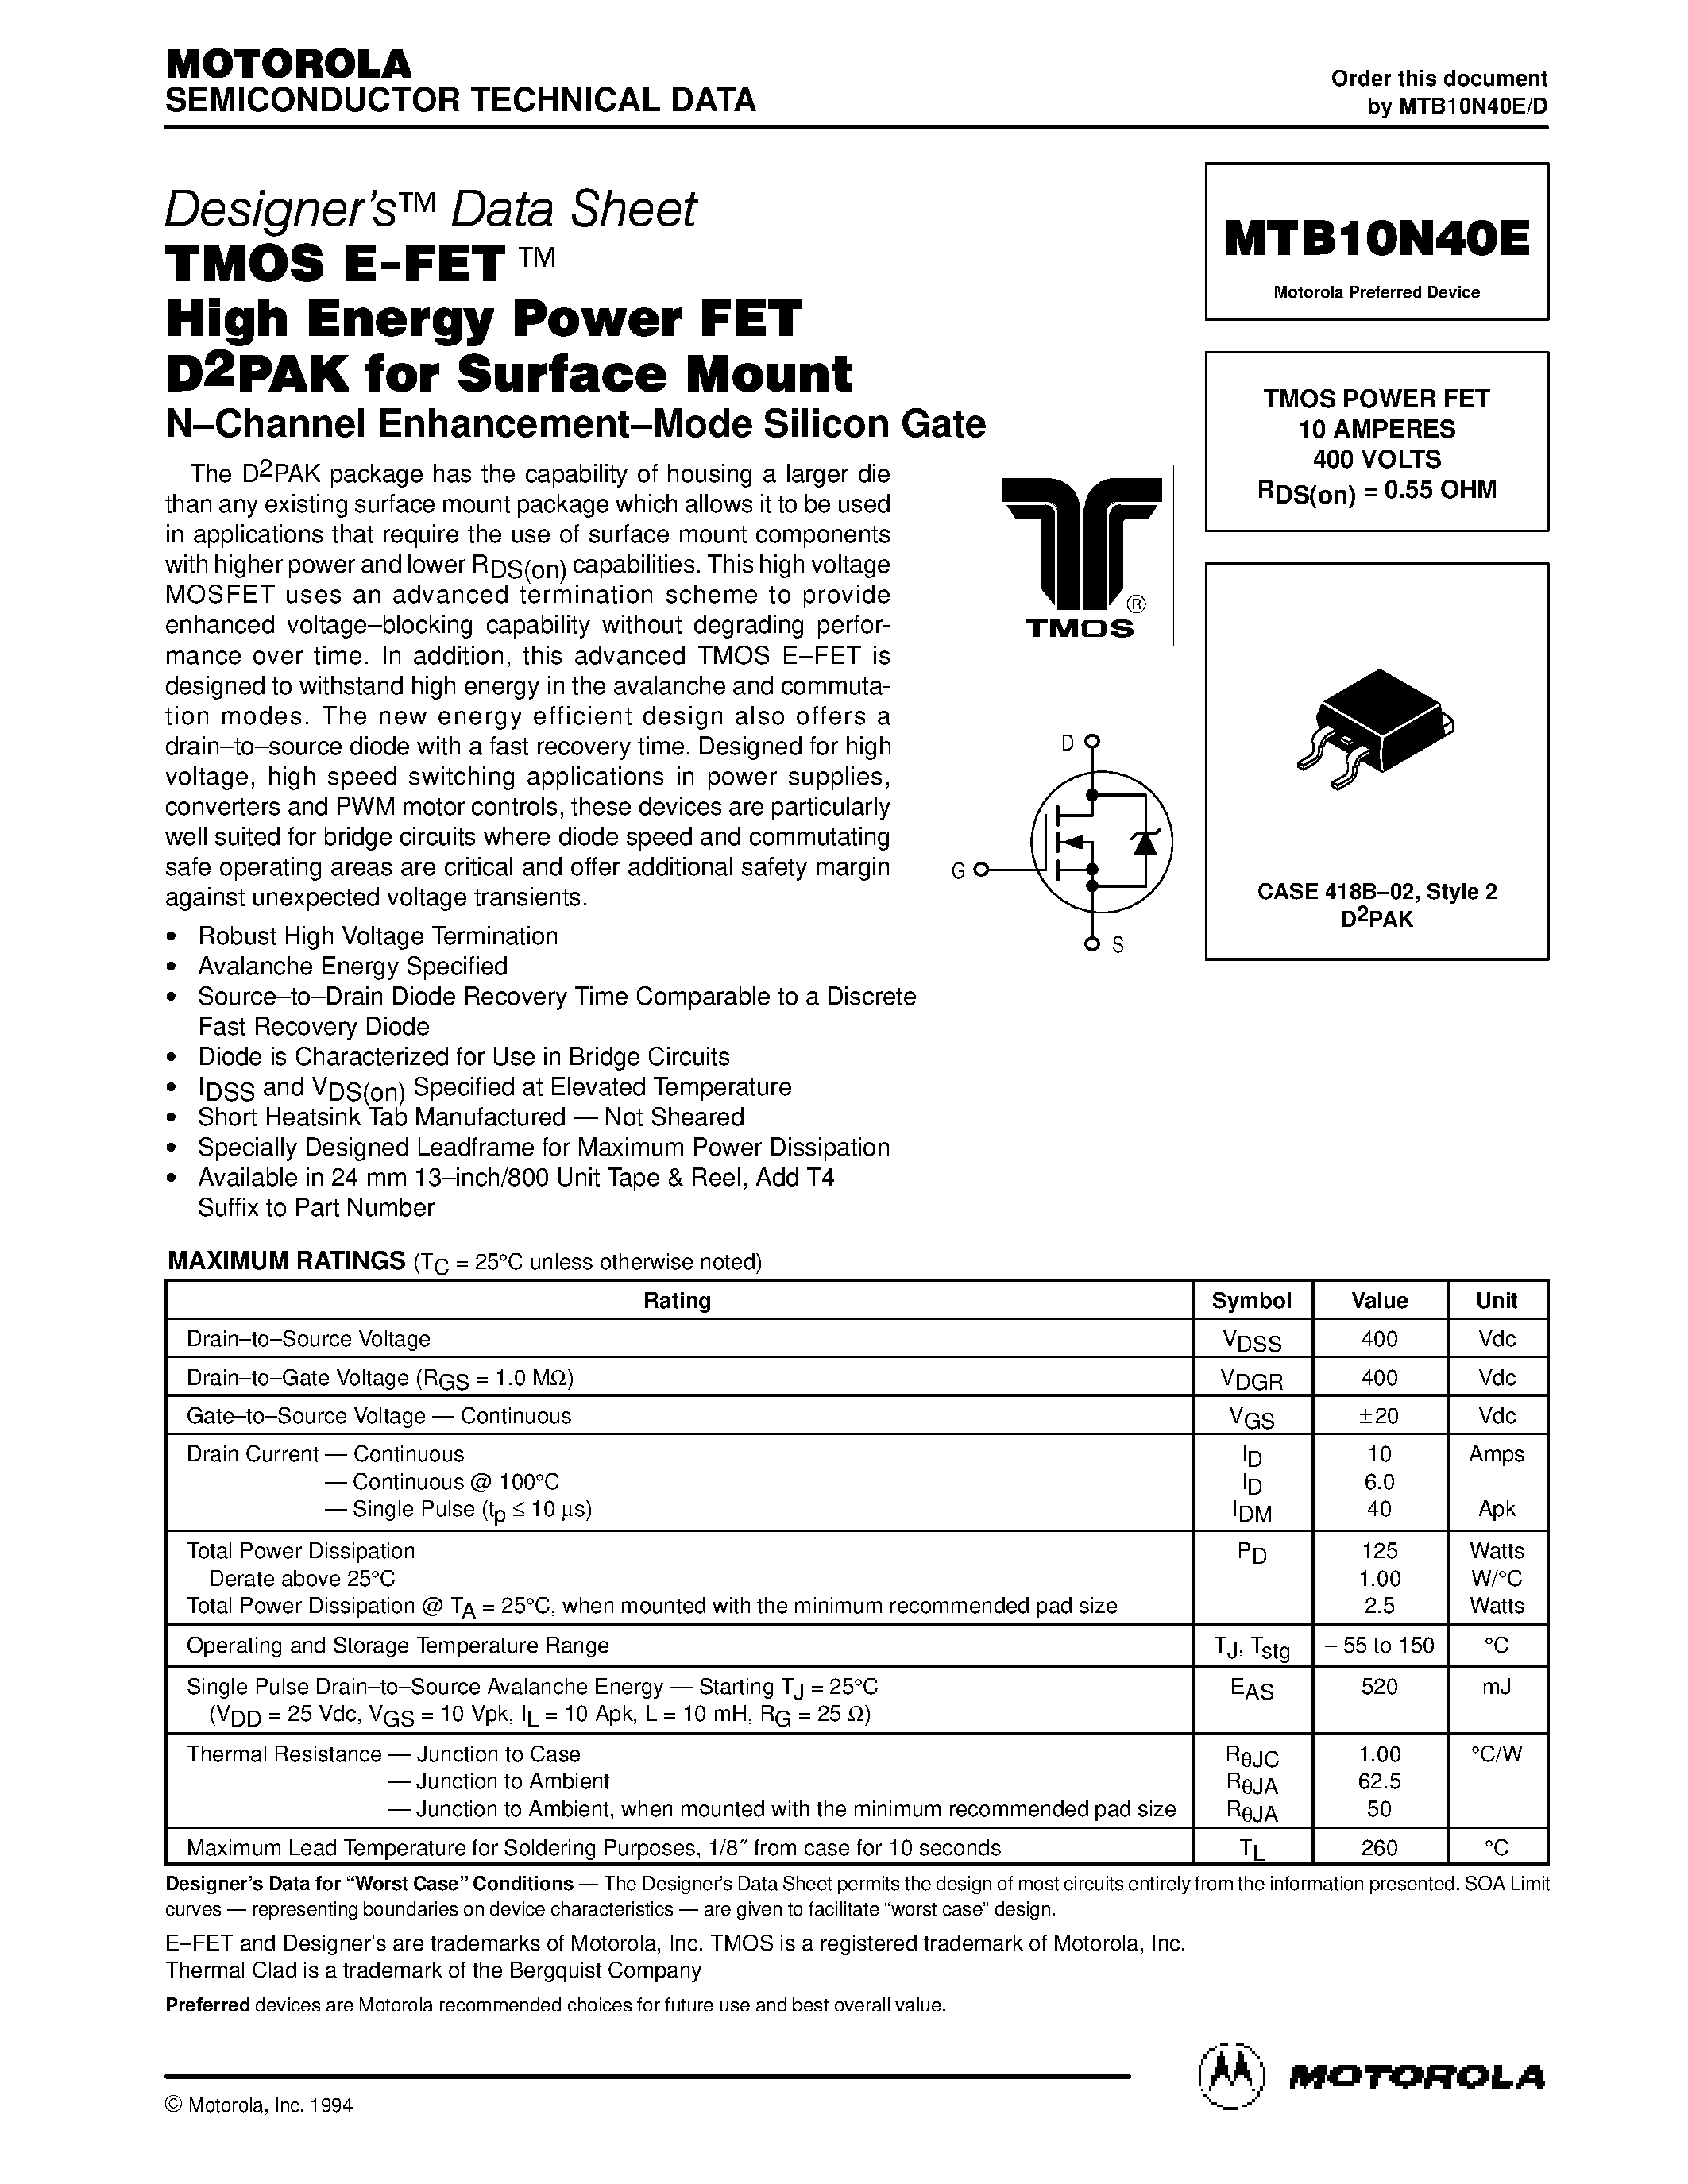 Даташит MTB10N40E - TMOS POWER FET 10 AMPERES страница 1